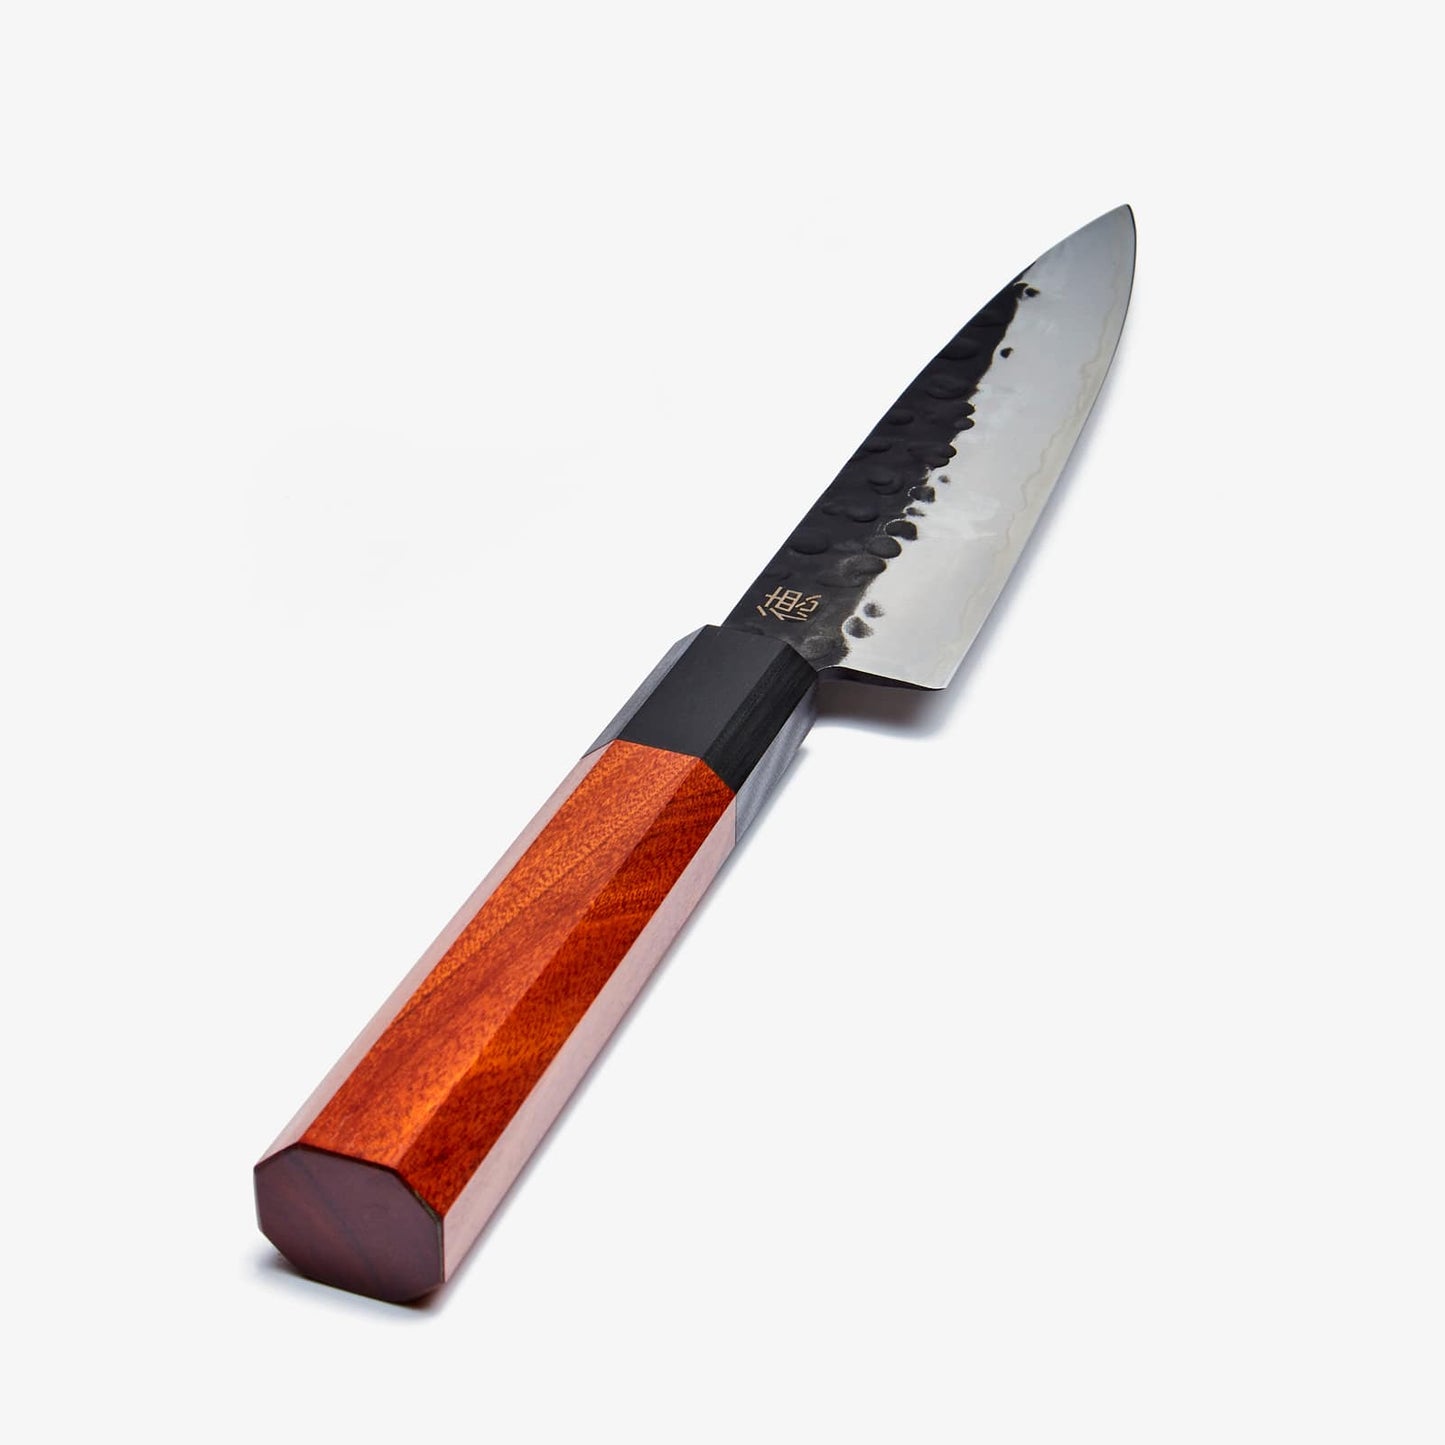 Minato små kniv